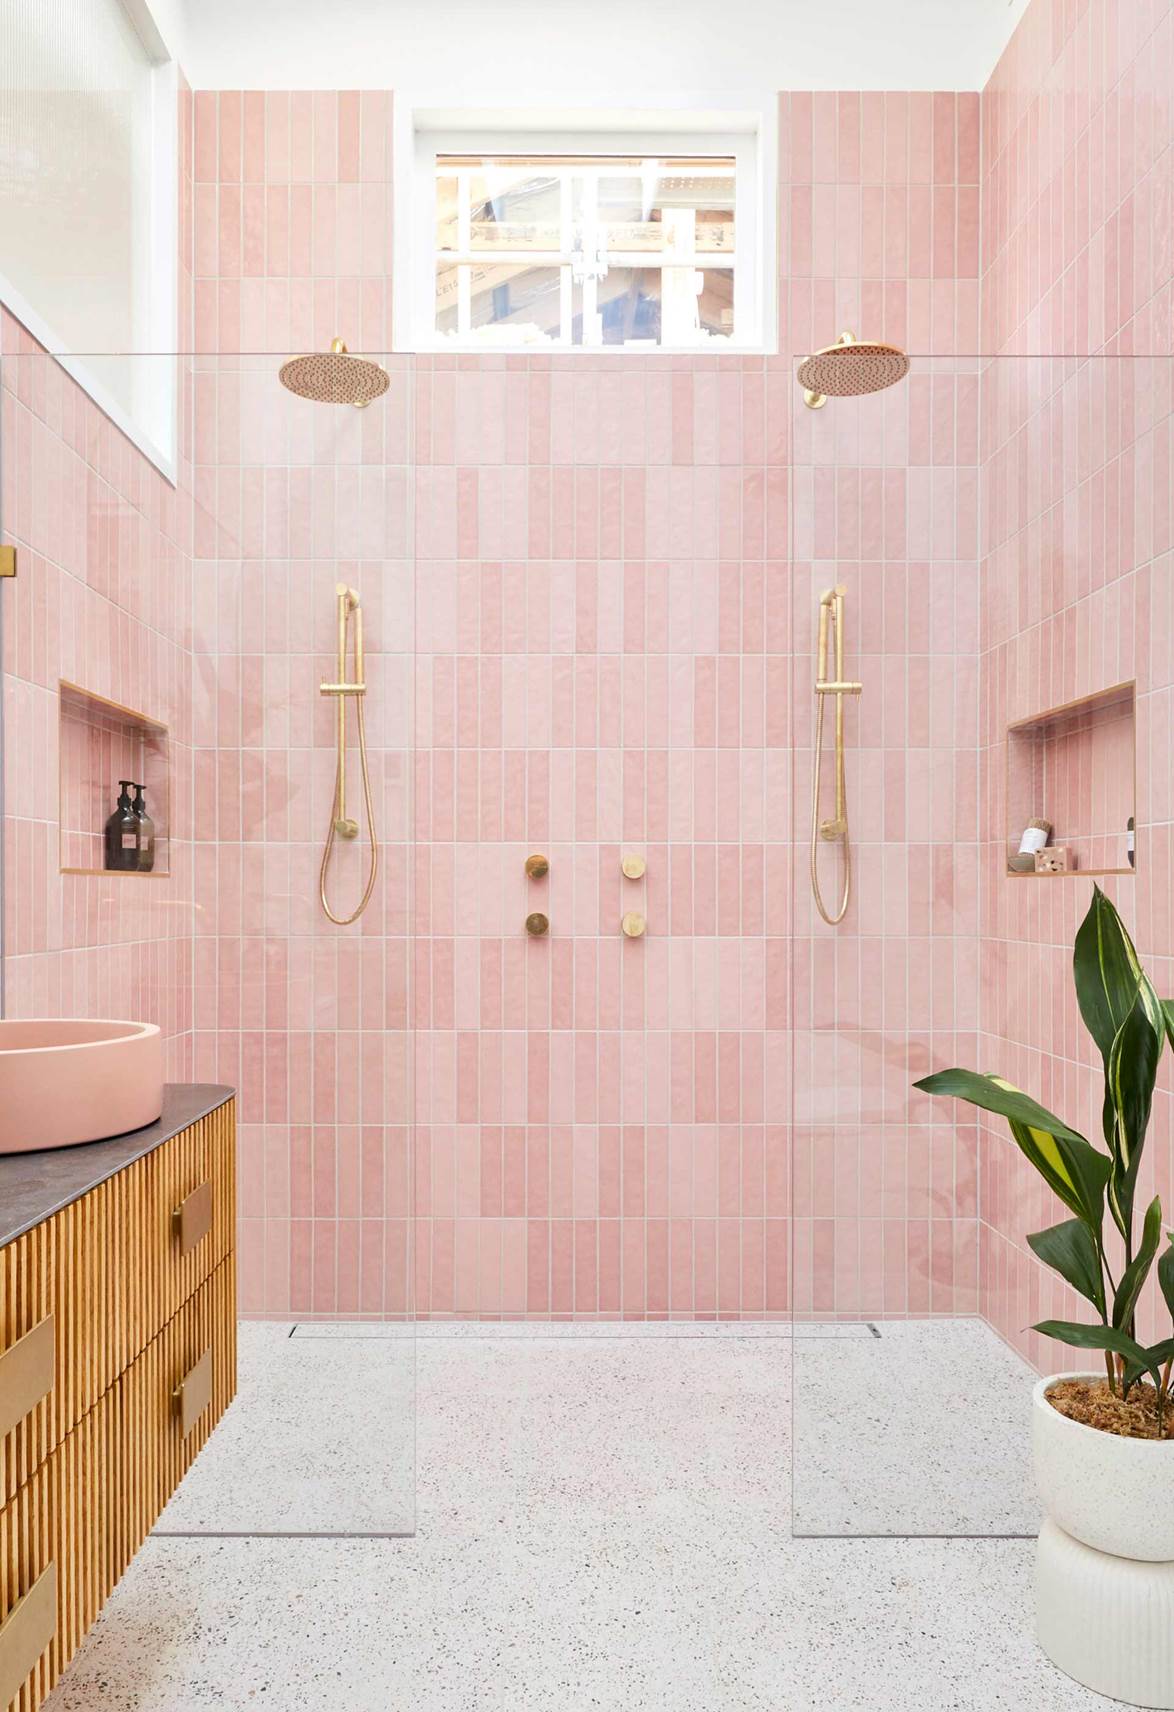 Tha hồ gom nhặt ý tưởng cho căn phòng tắm gia đình với những thiết kế đẹp miễn chê - Ảnh 5.